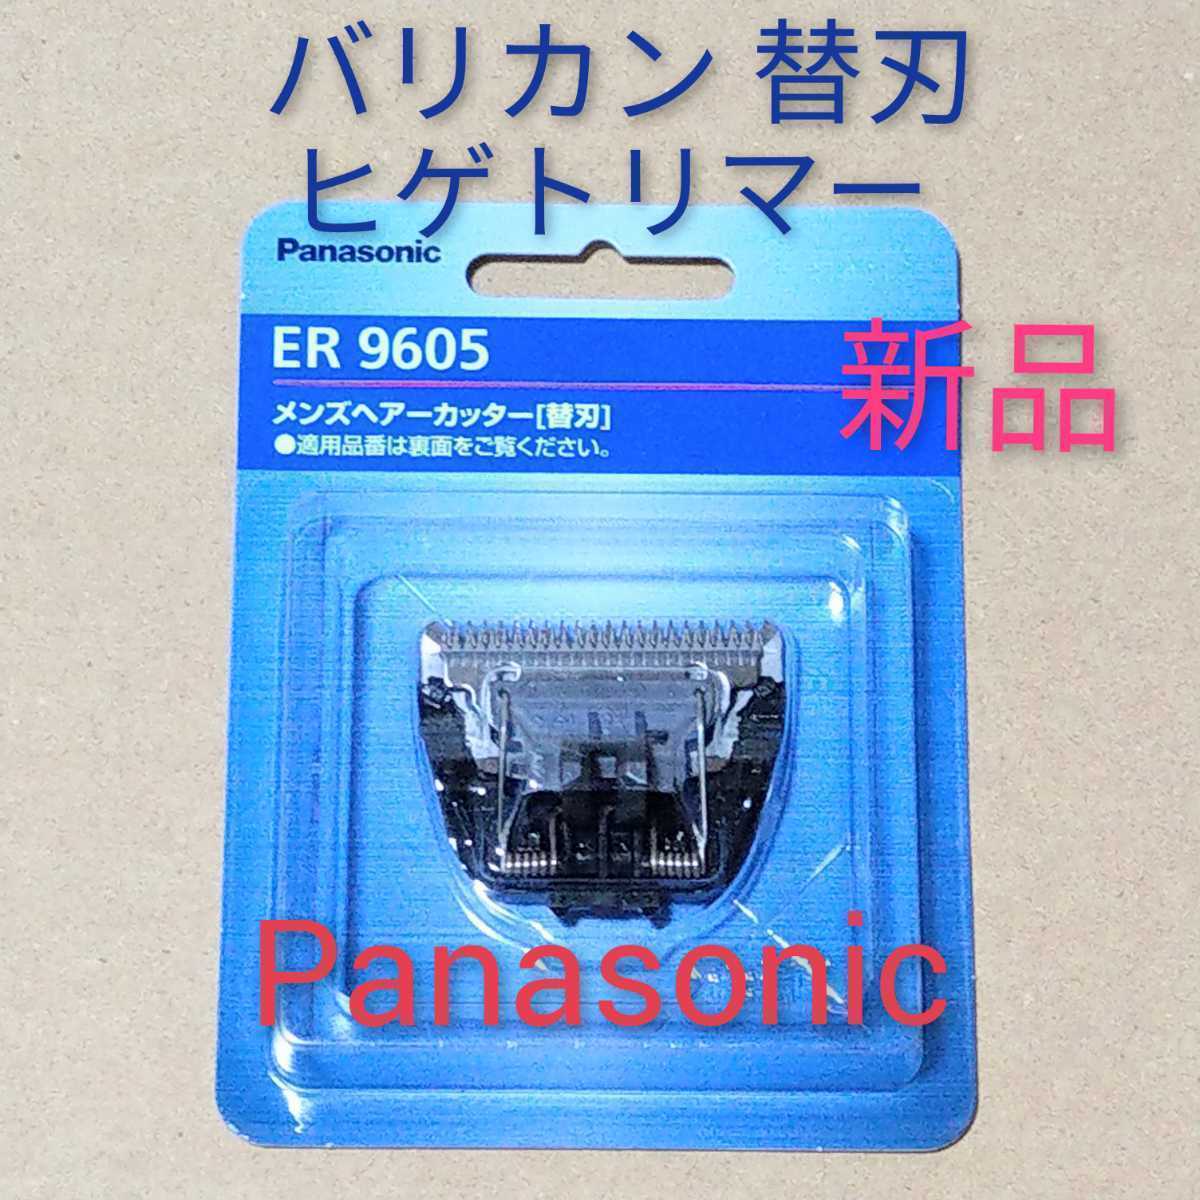 国内発送 パナソニック ER9605 替刃 バリカン ボウズカッター用 Panasonic riosmauricio.com